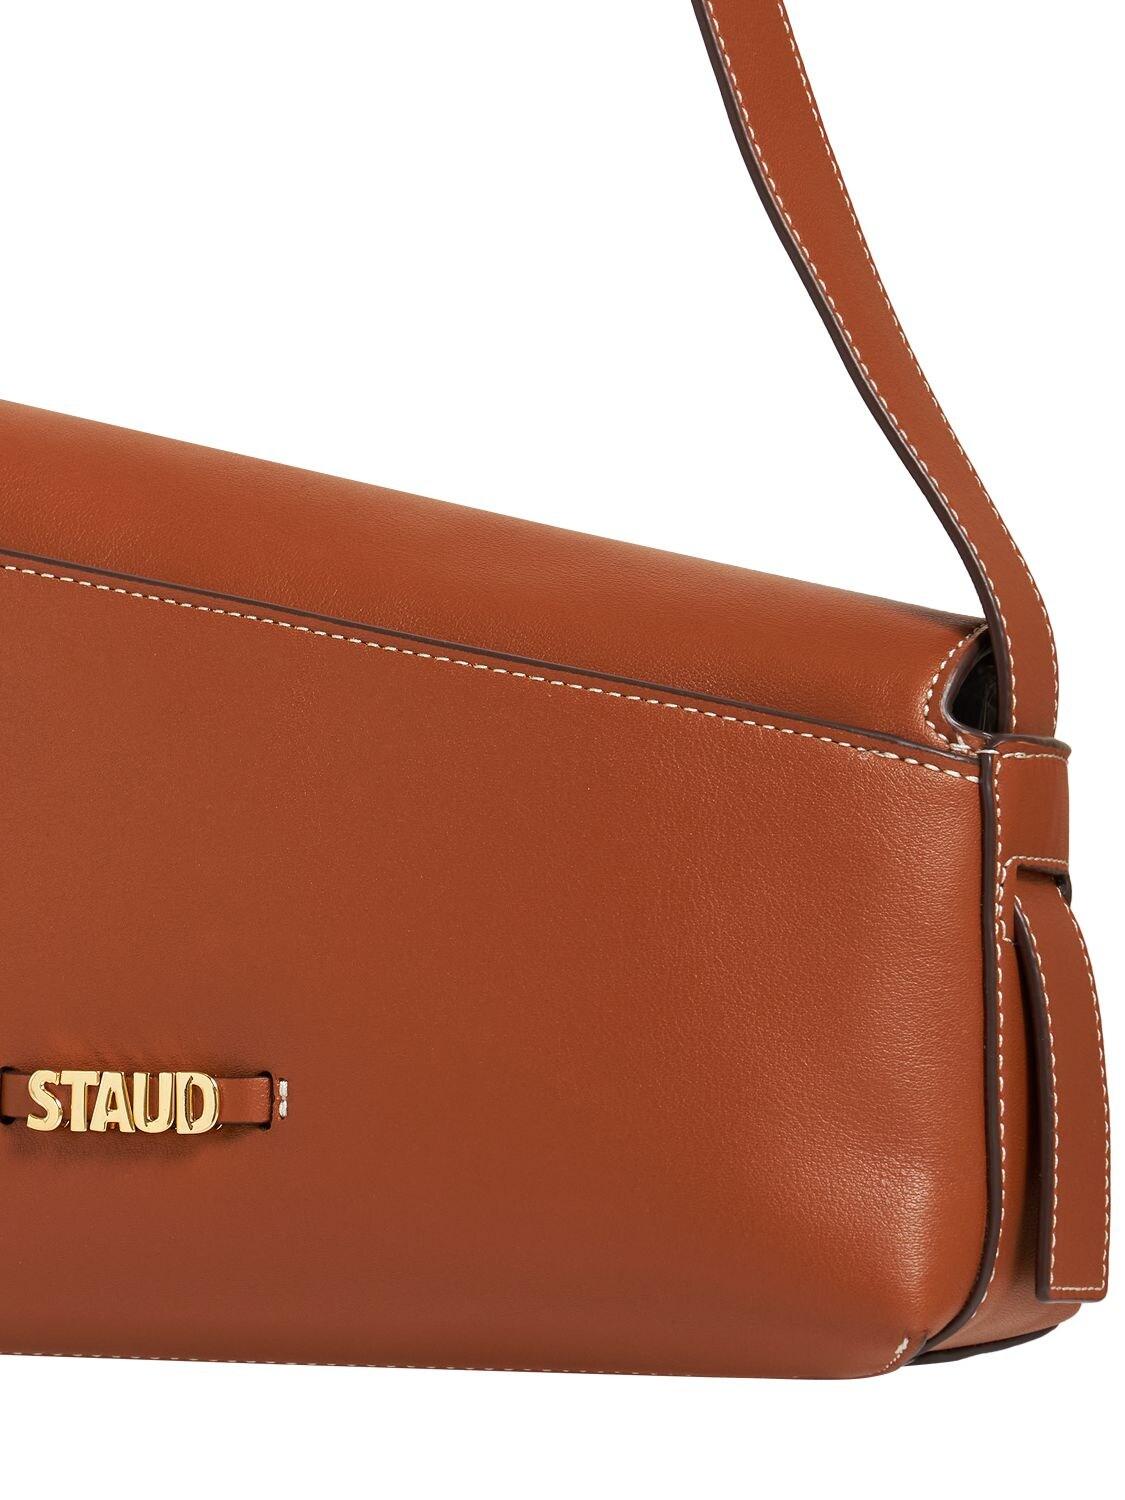 STAUD Acute Leather Shoulder Bag in Tan (Brown) | Lyst